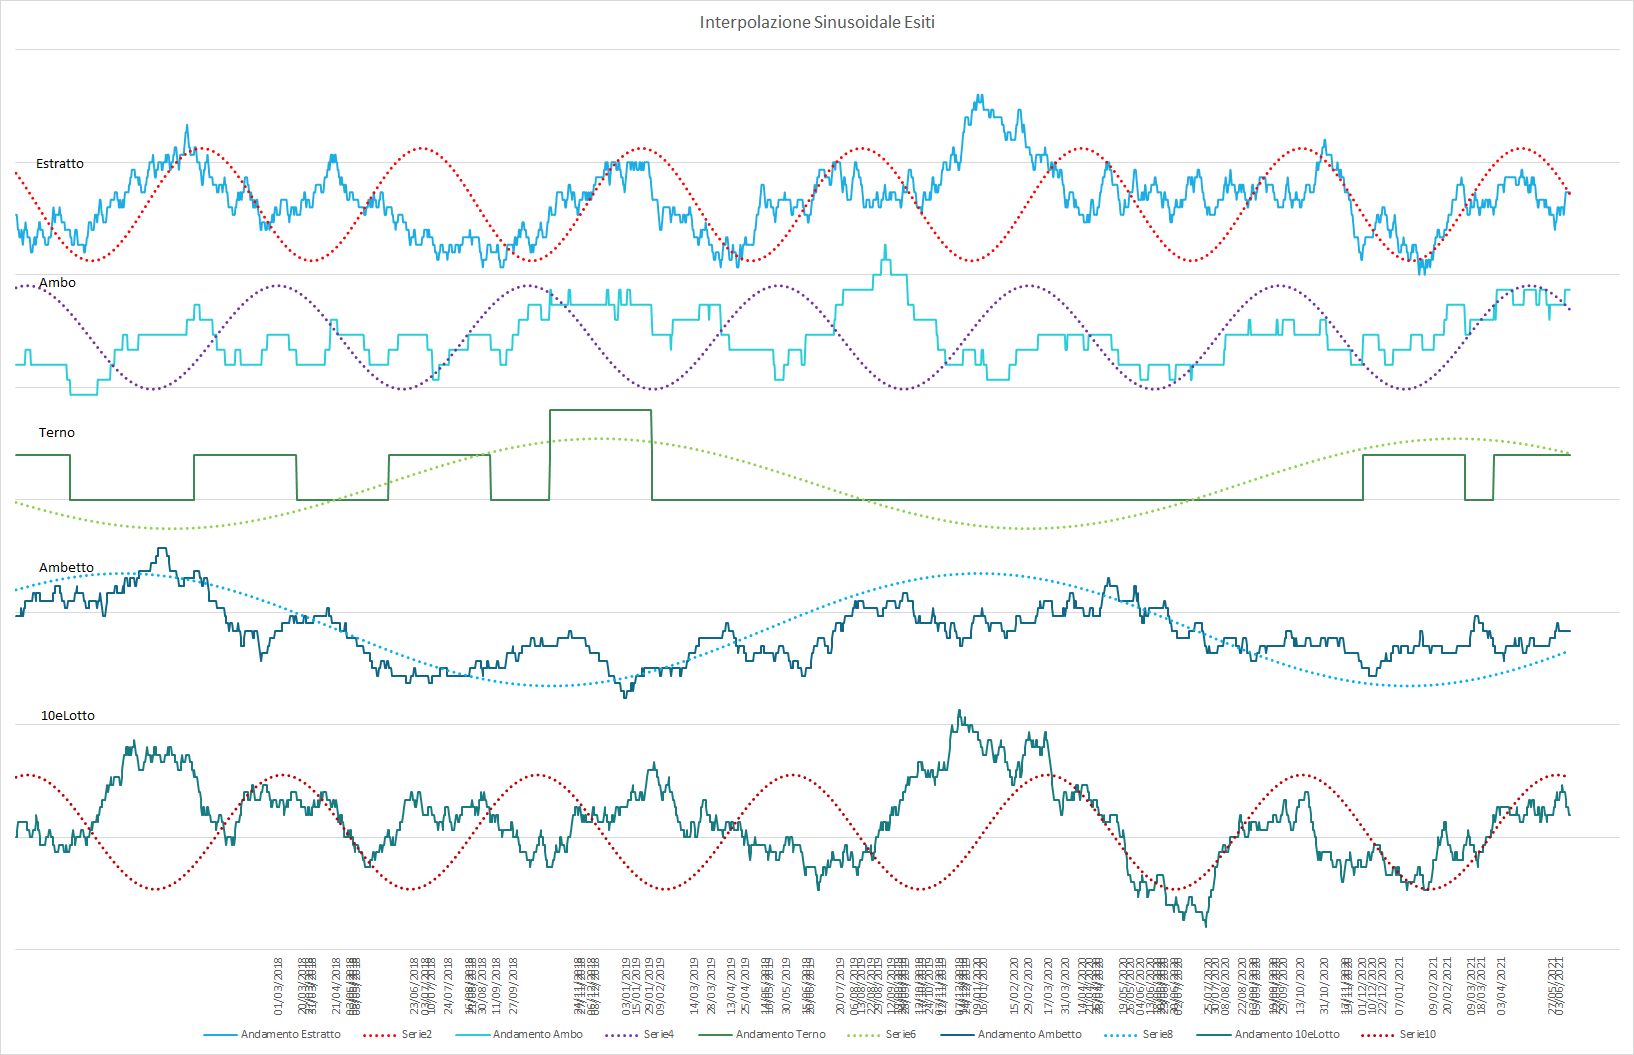 Ipotetico andamento sinusoidale interpolante per le medie delle varie sortite - Aggiornato all'estrazione precedente il 12 Giugno 2021